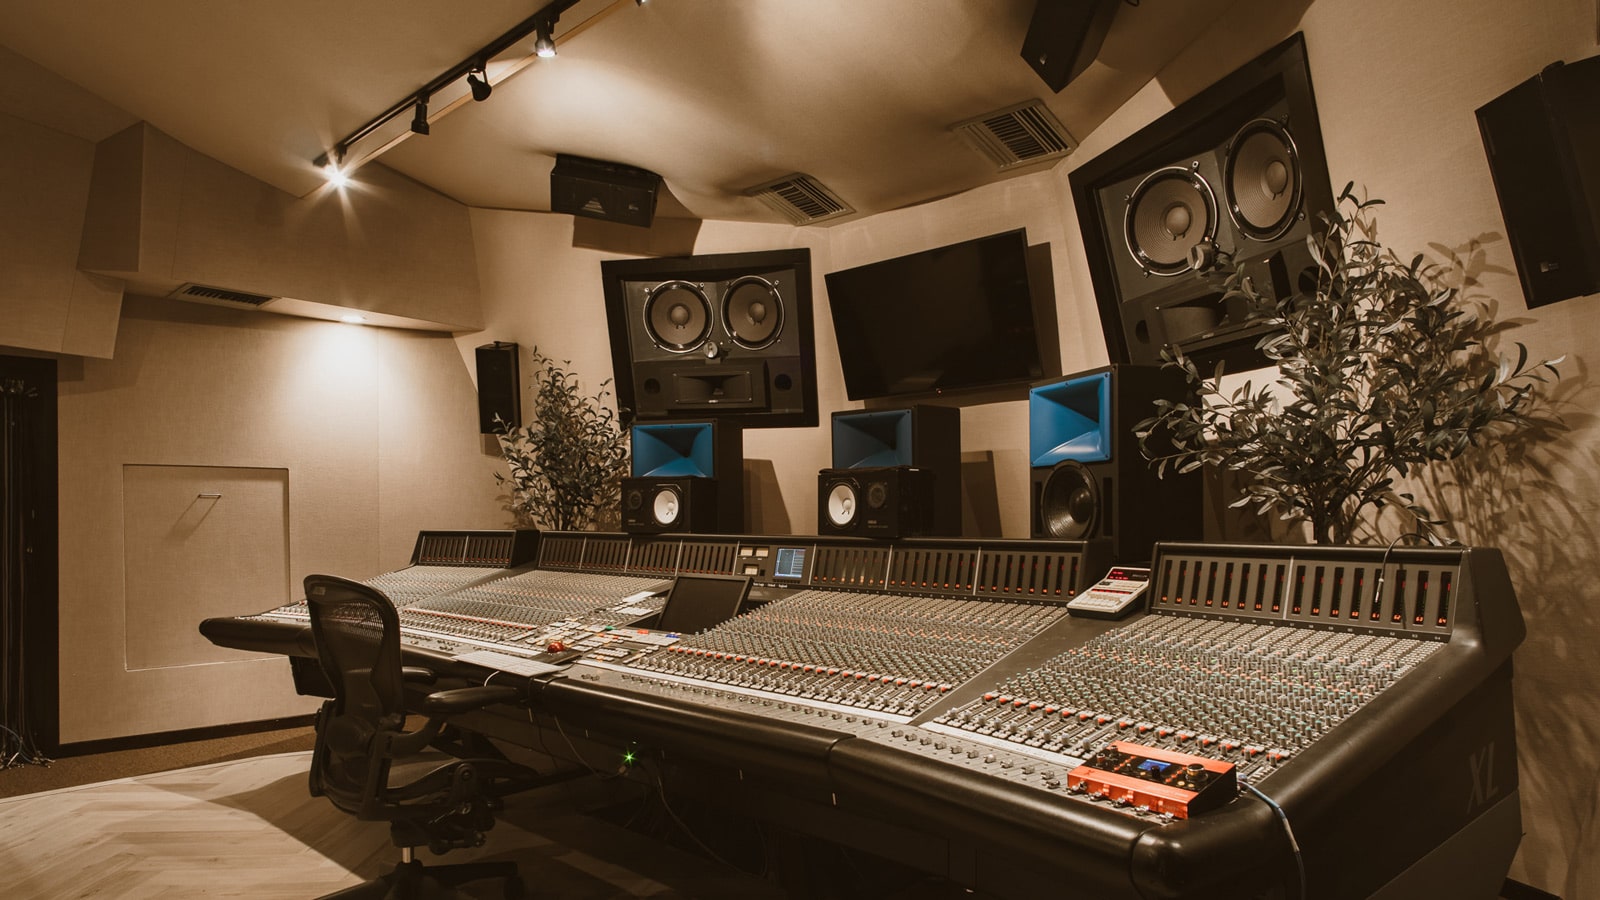 Studio 3, Larrabee Studios